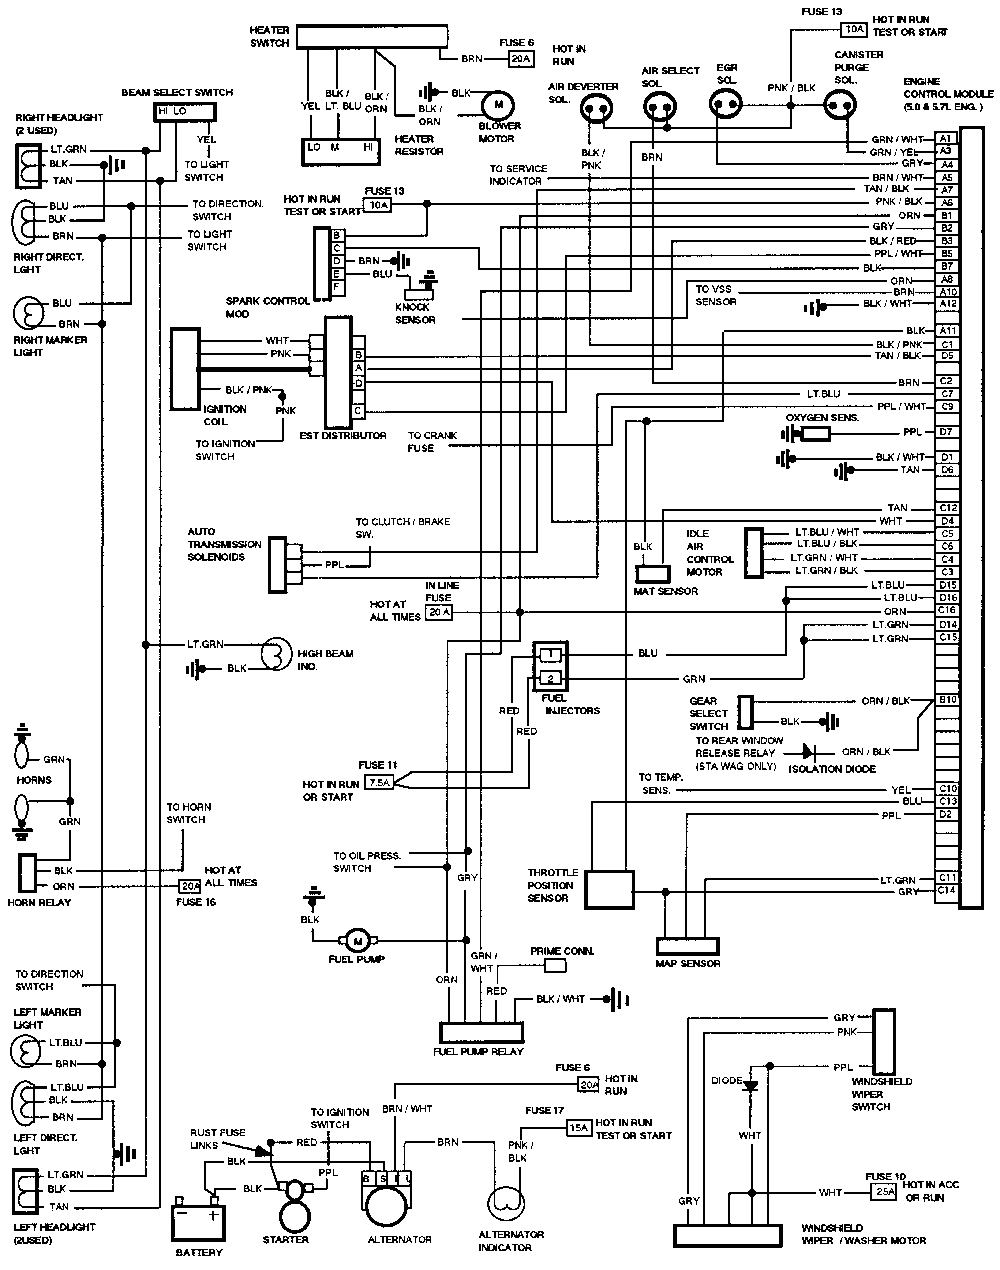 mopar neutral safety switch wiring diagram wiring diagram db chrysler 727 neutral safety switch wiring wiring